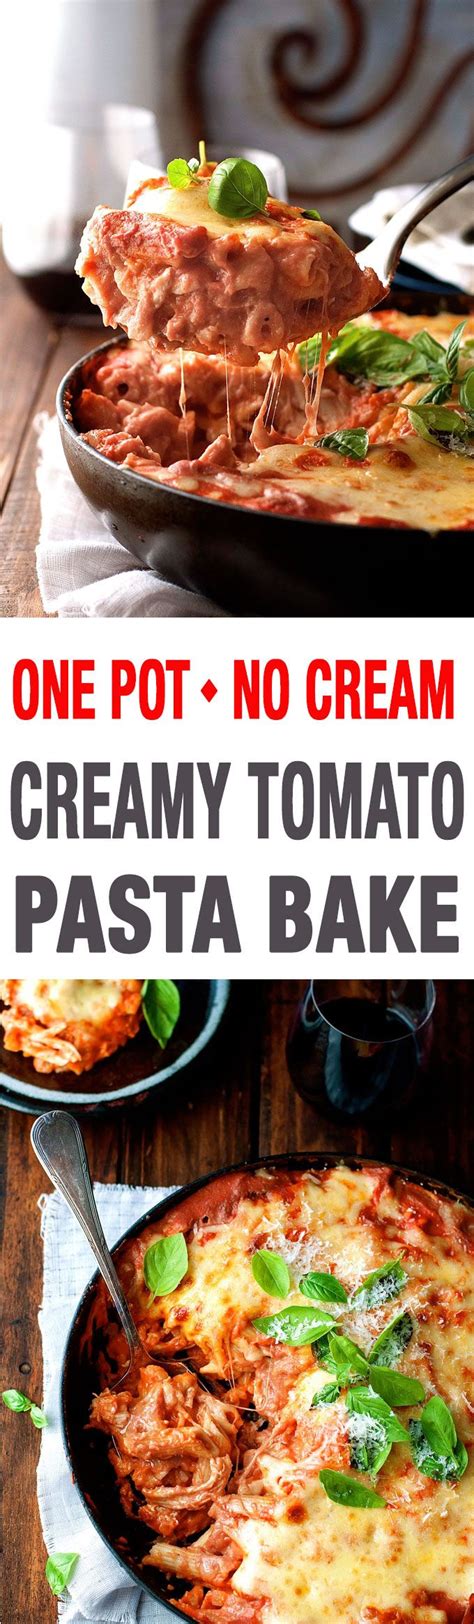 Creamy Tomato Pasta Bake With Chicken One Pot Recipe Recipetin